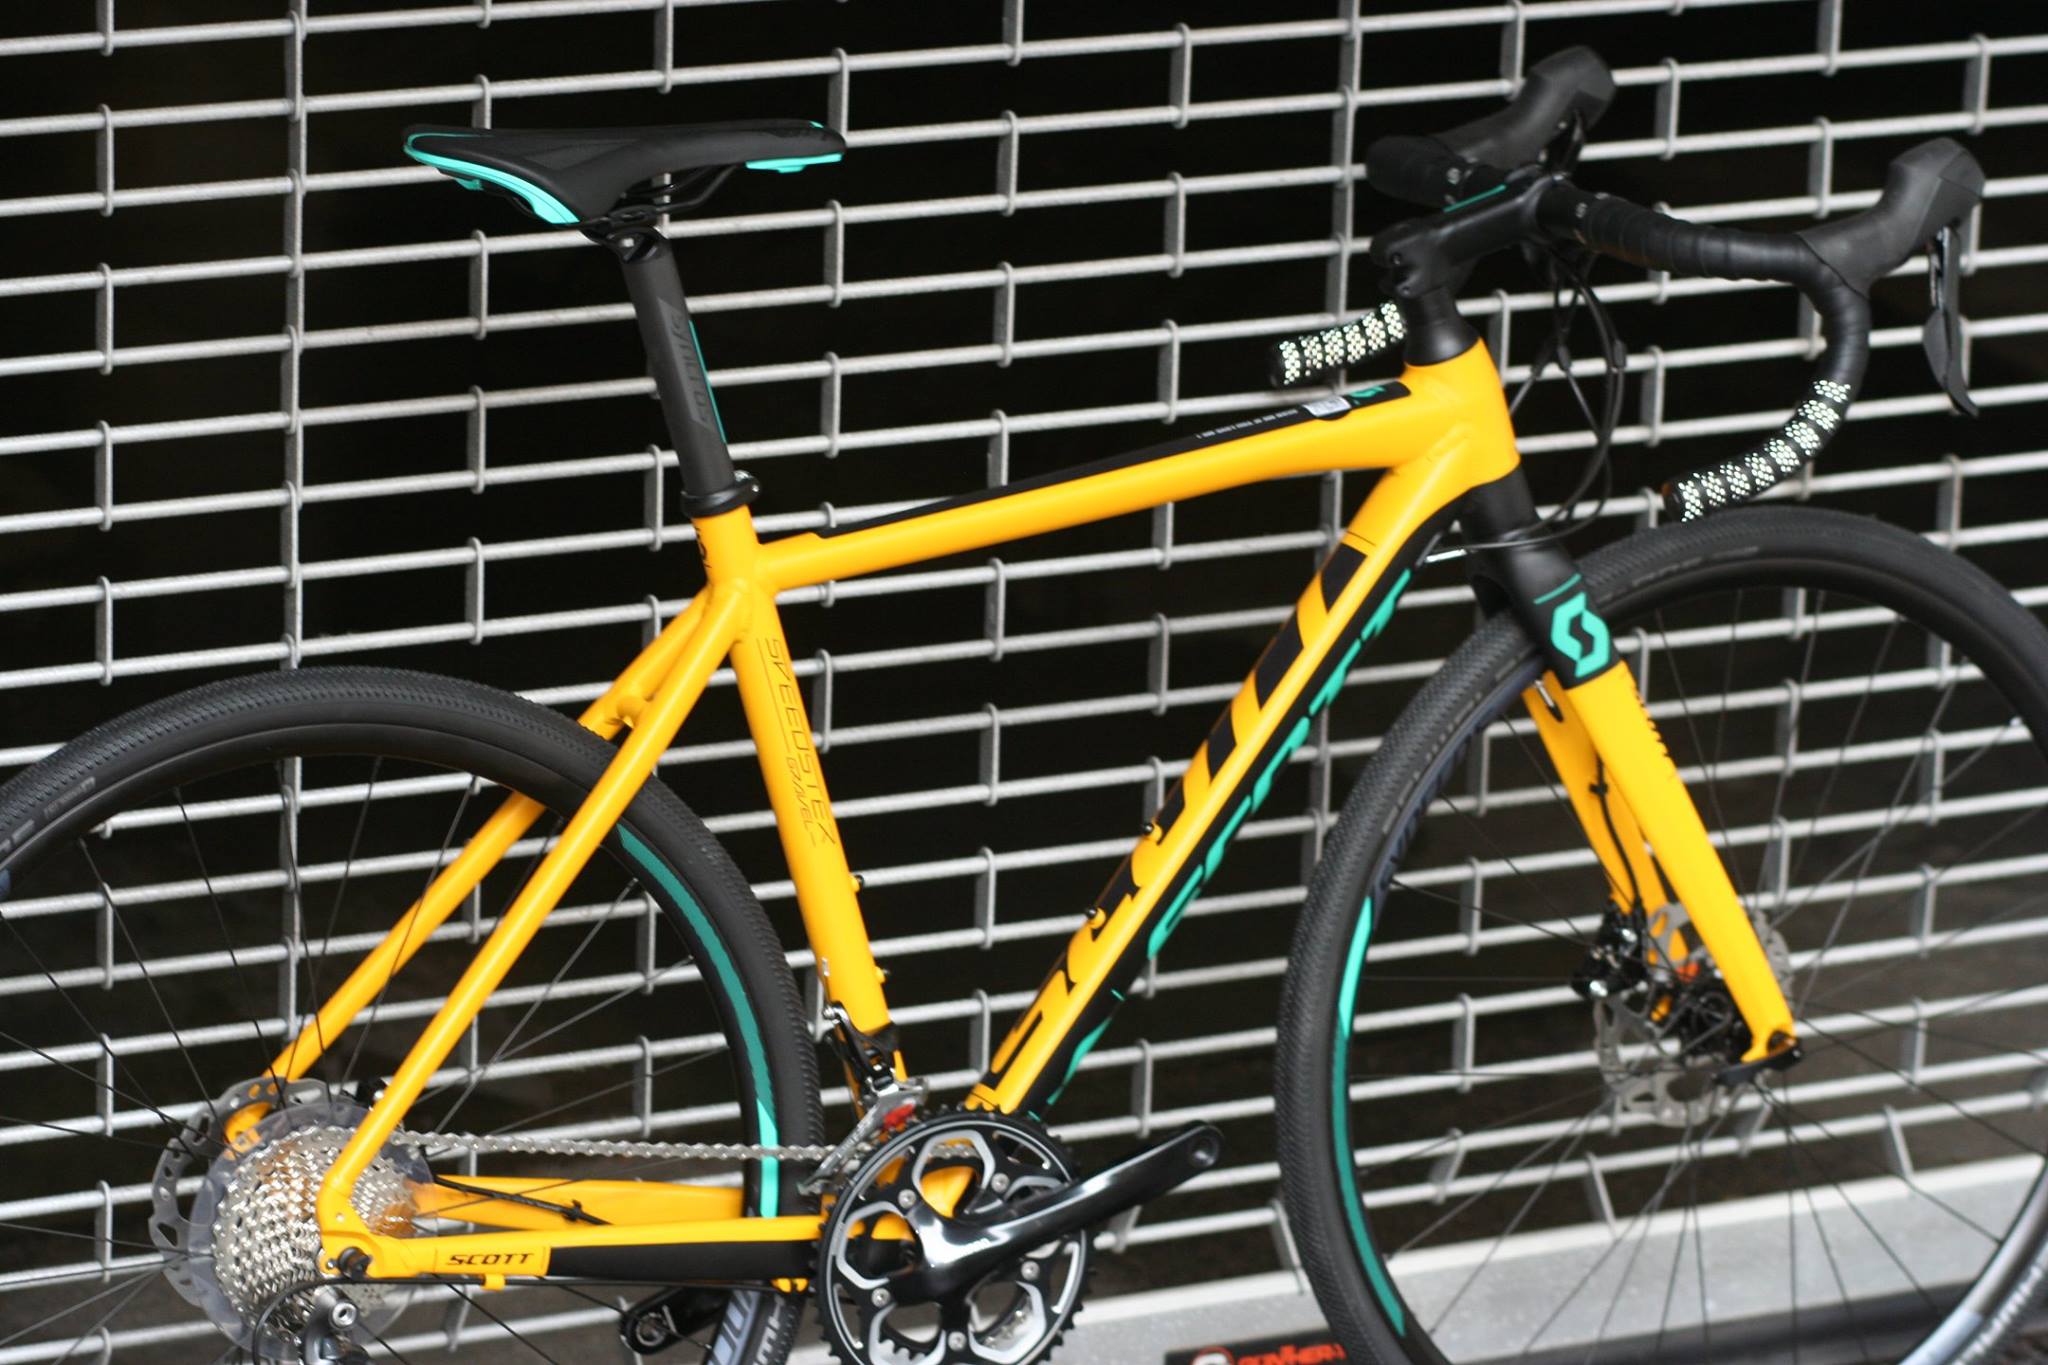 Scott Speedster Gravel bikes ab Eur 1590,00